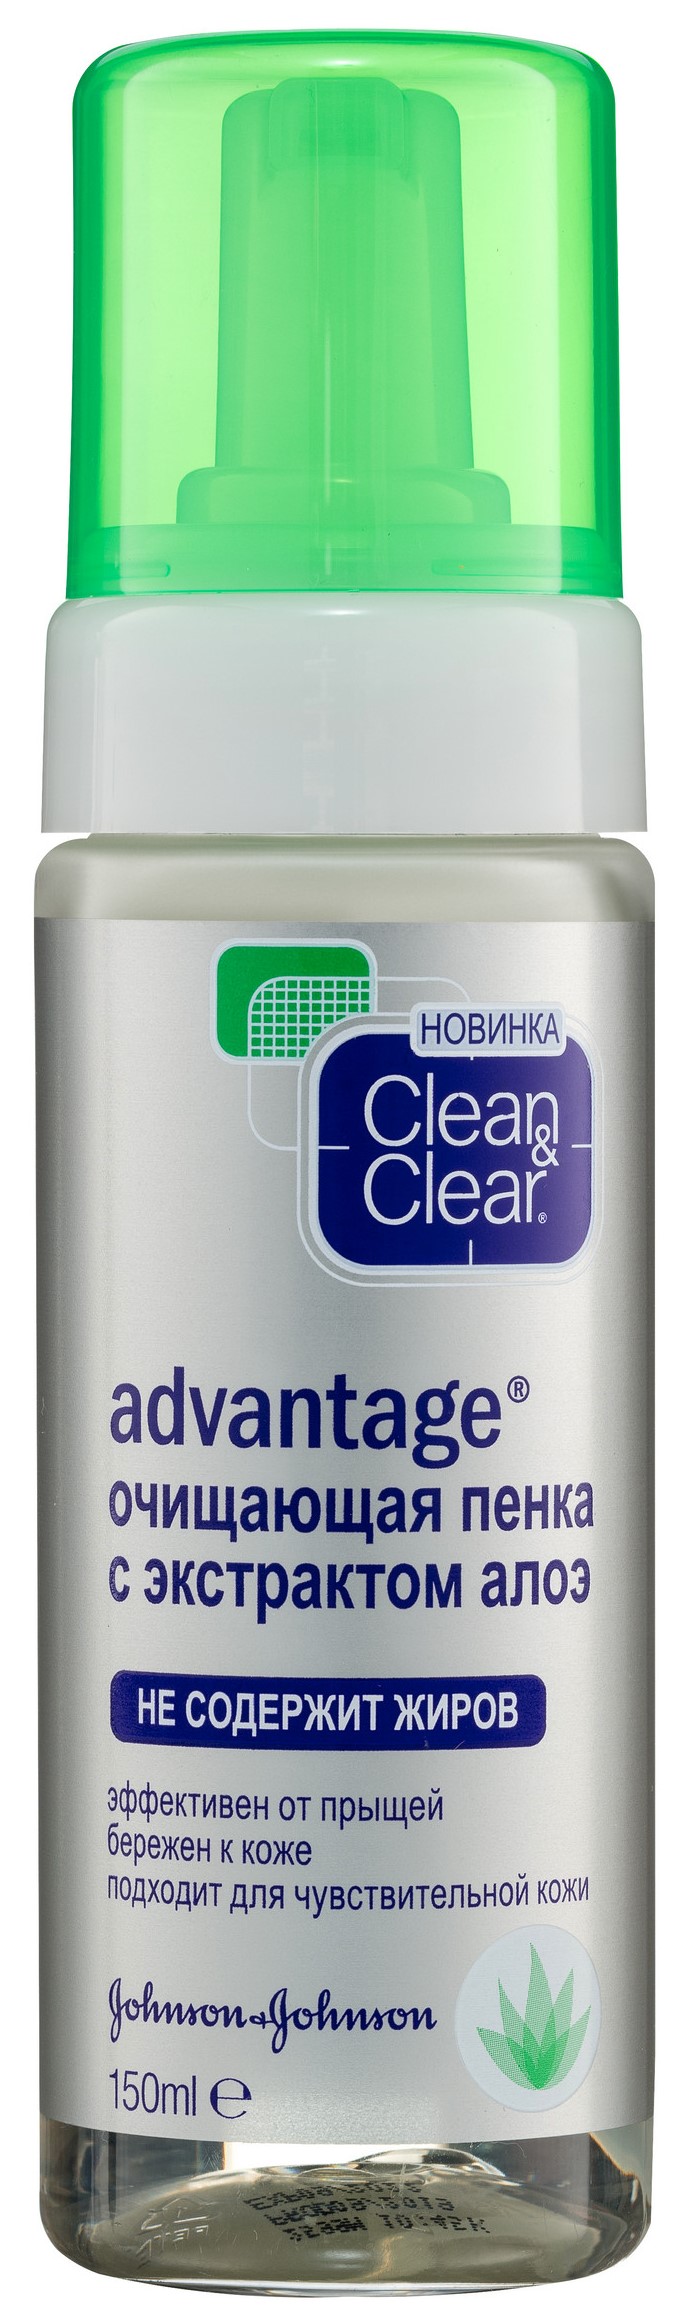 Очищающая пенка с экстрактом алоэ CleanClear Advantage 150 мл